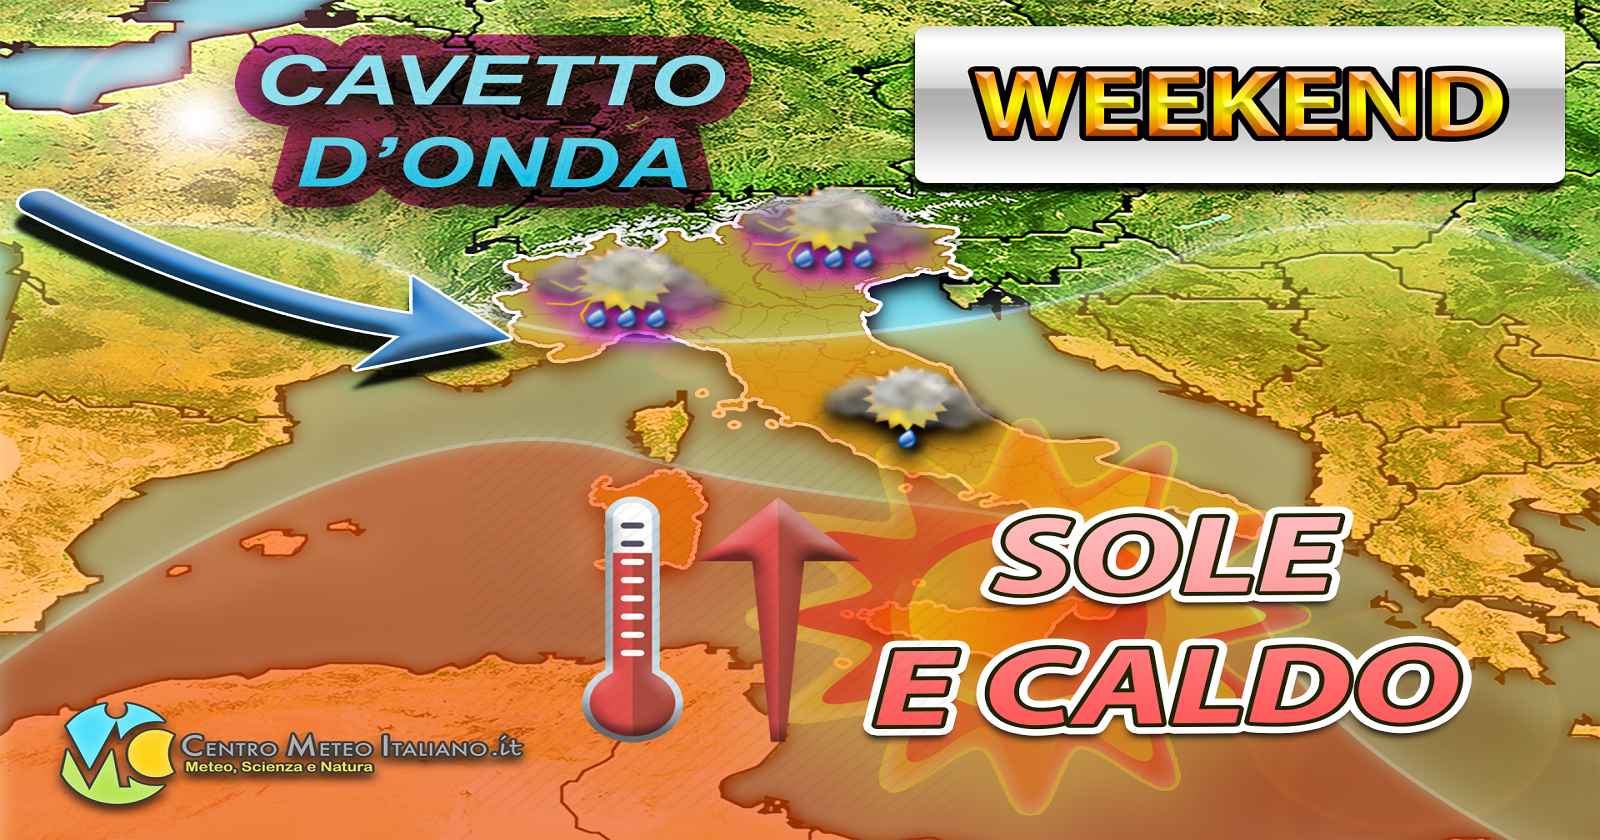 Cavo d'onda in transito nel fine settimana, ecco cosa accadrà in Italia - Centro Meteo Italiano